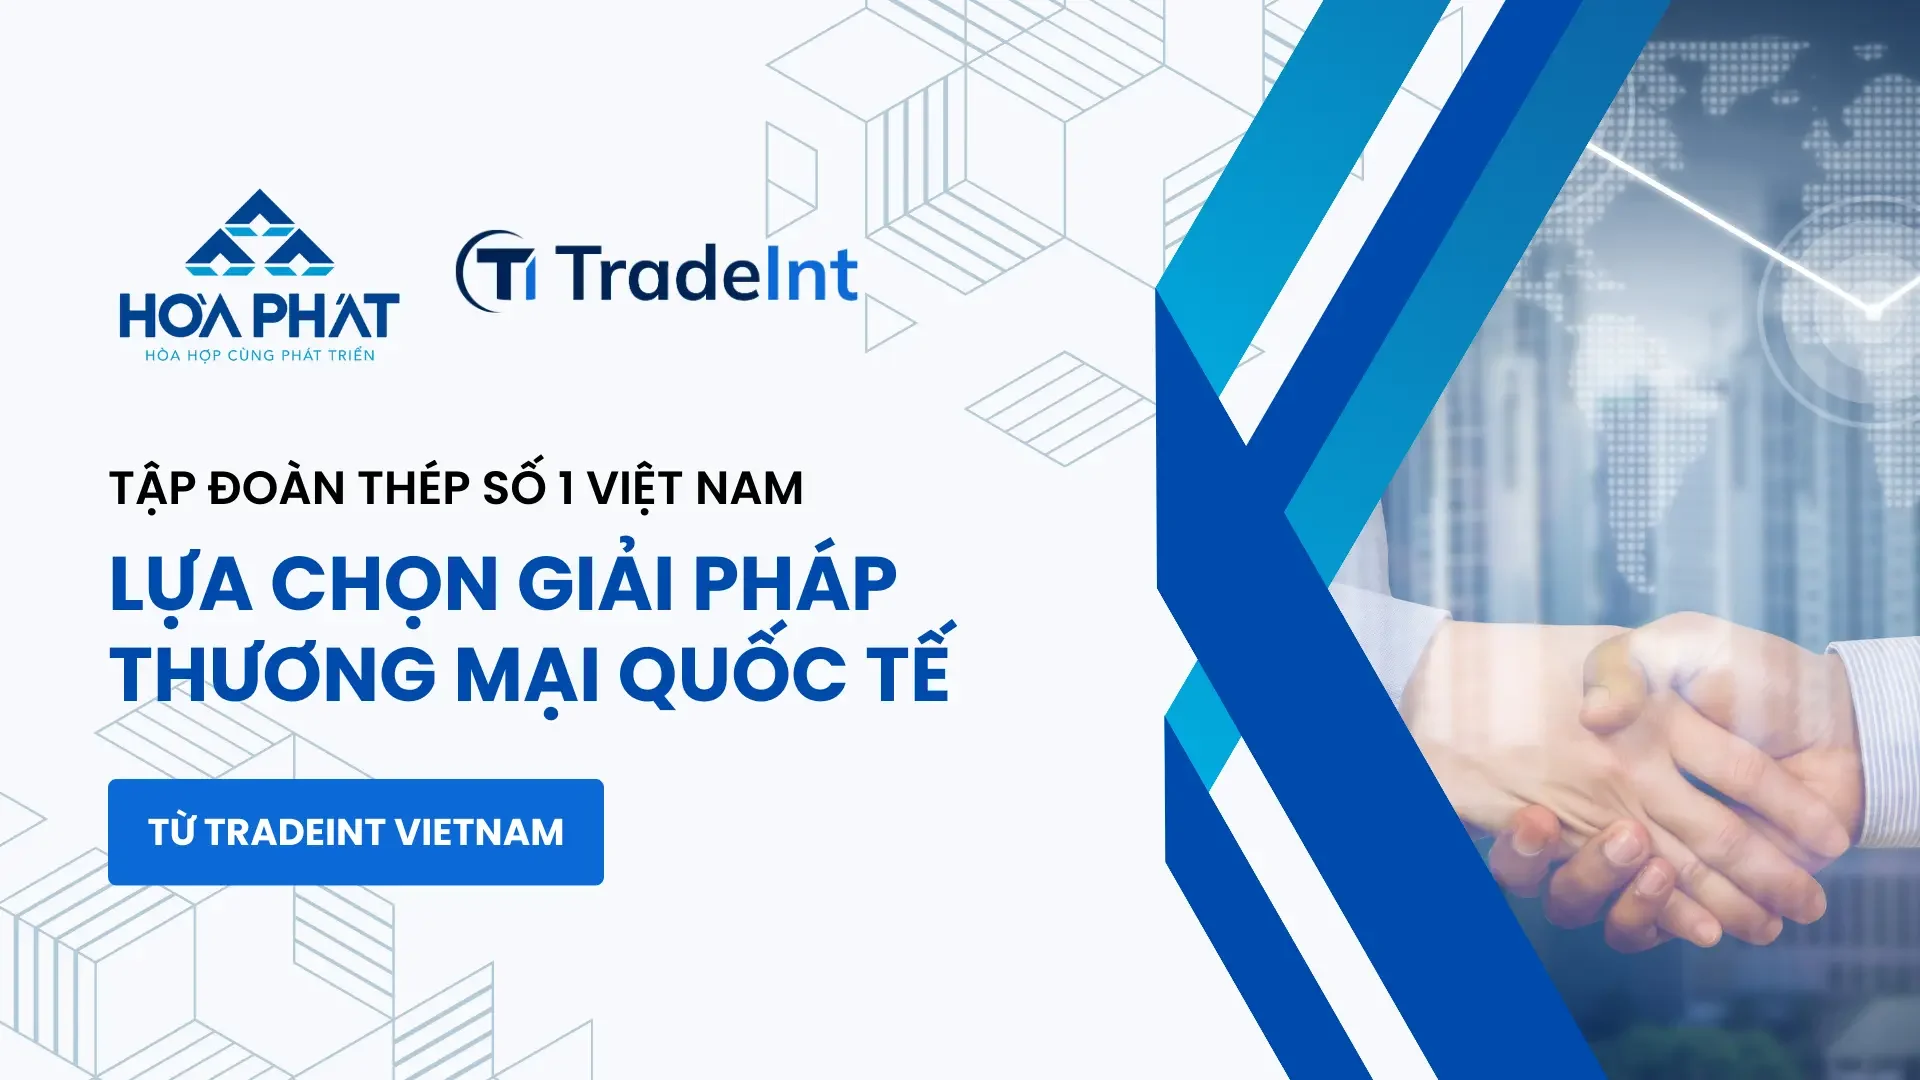 Hòa Phát lựa chọn nền tảng TradeInt Vietnam